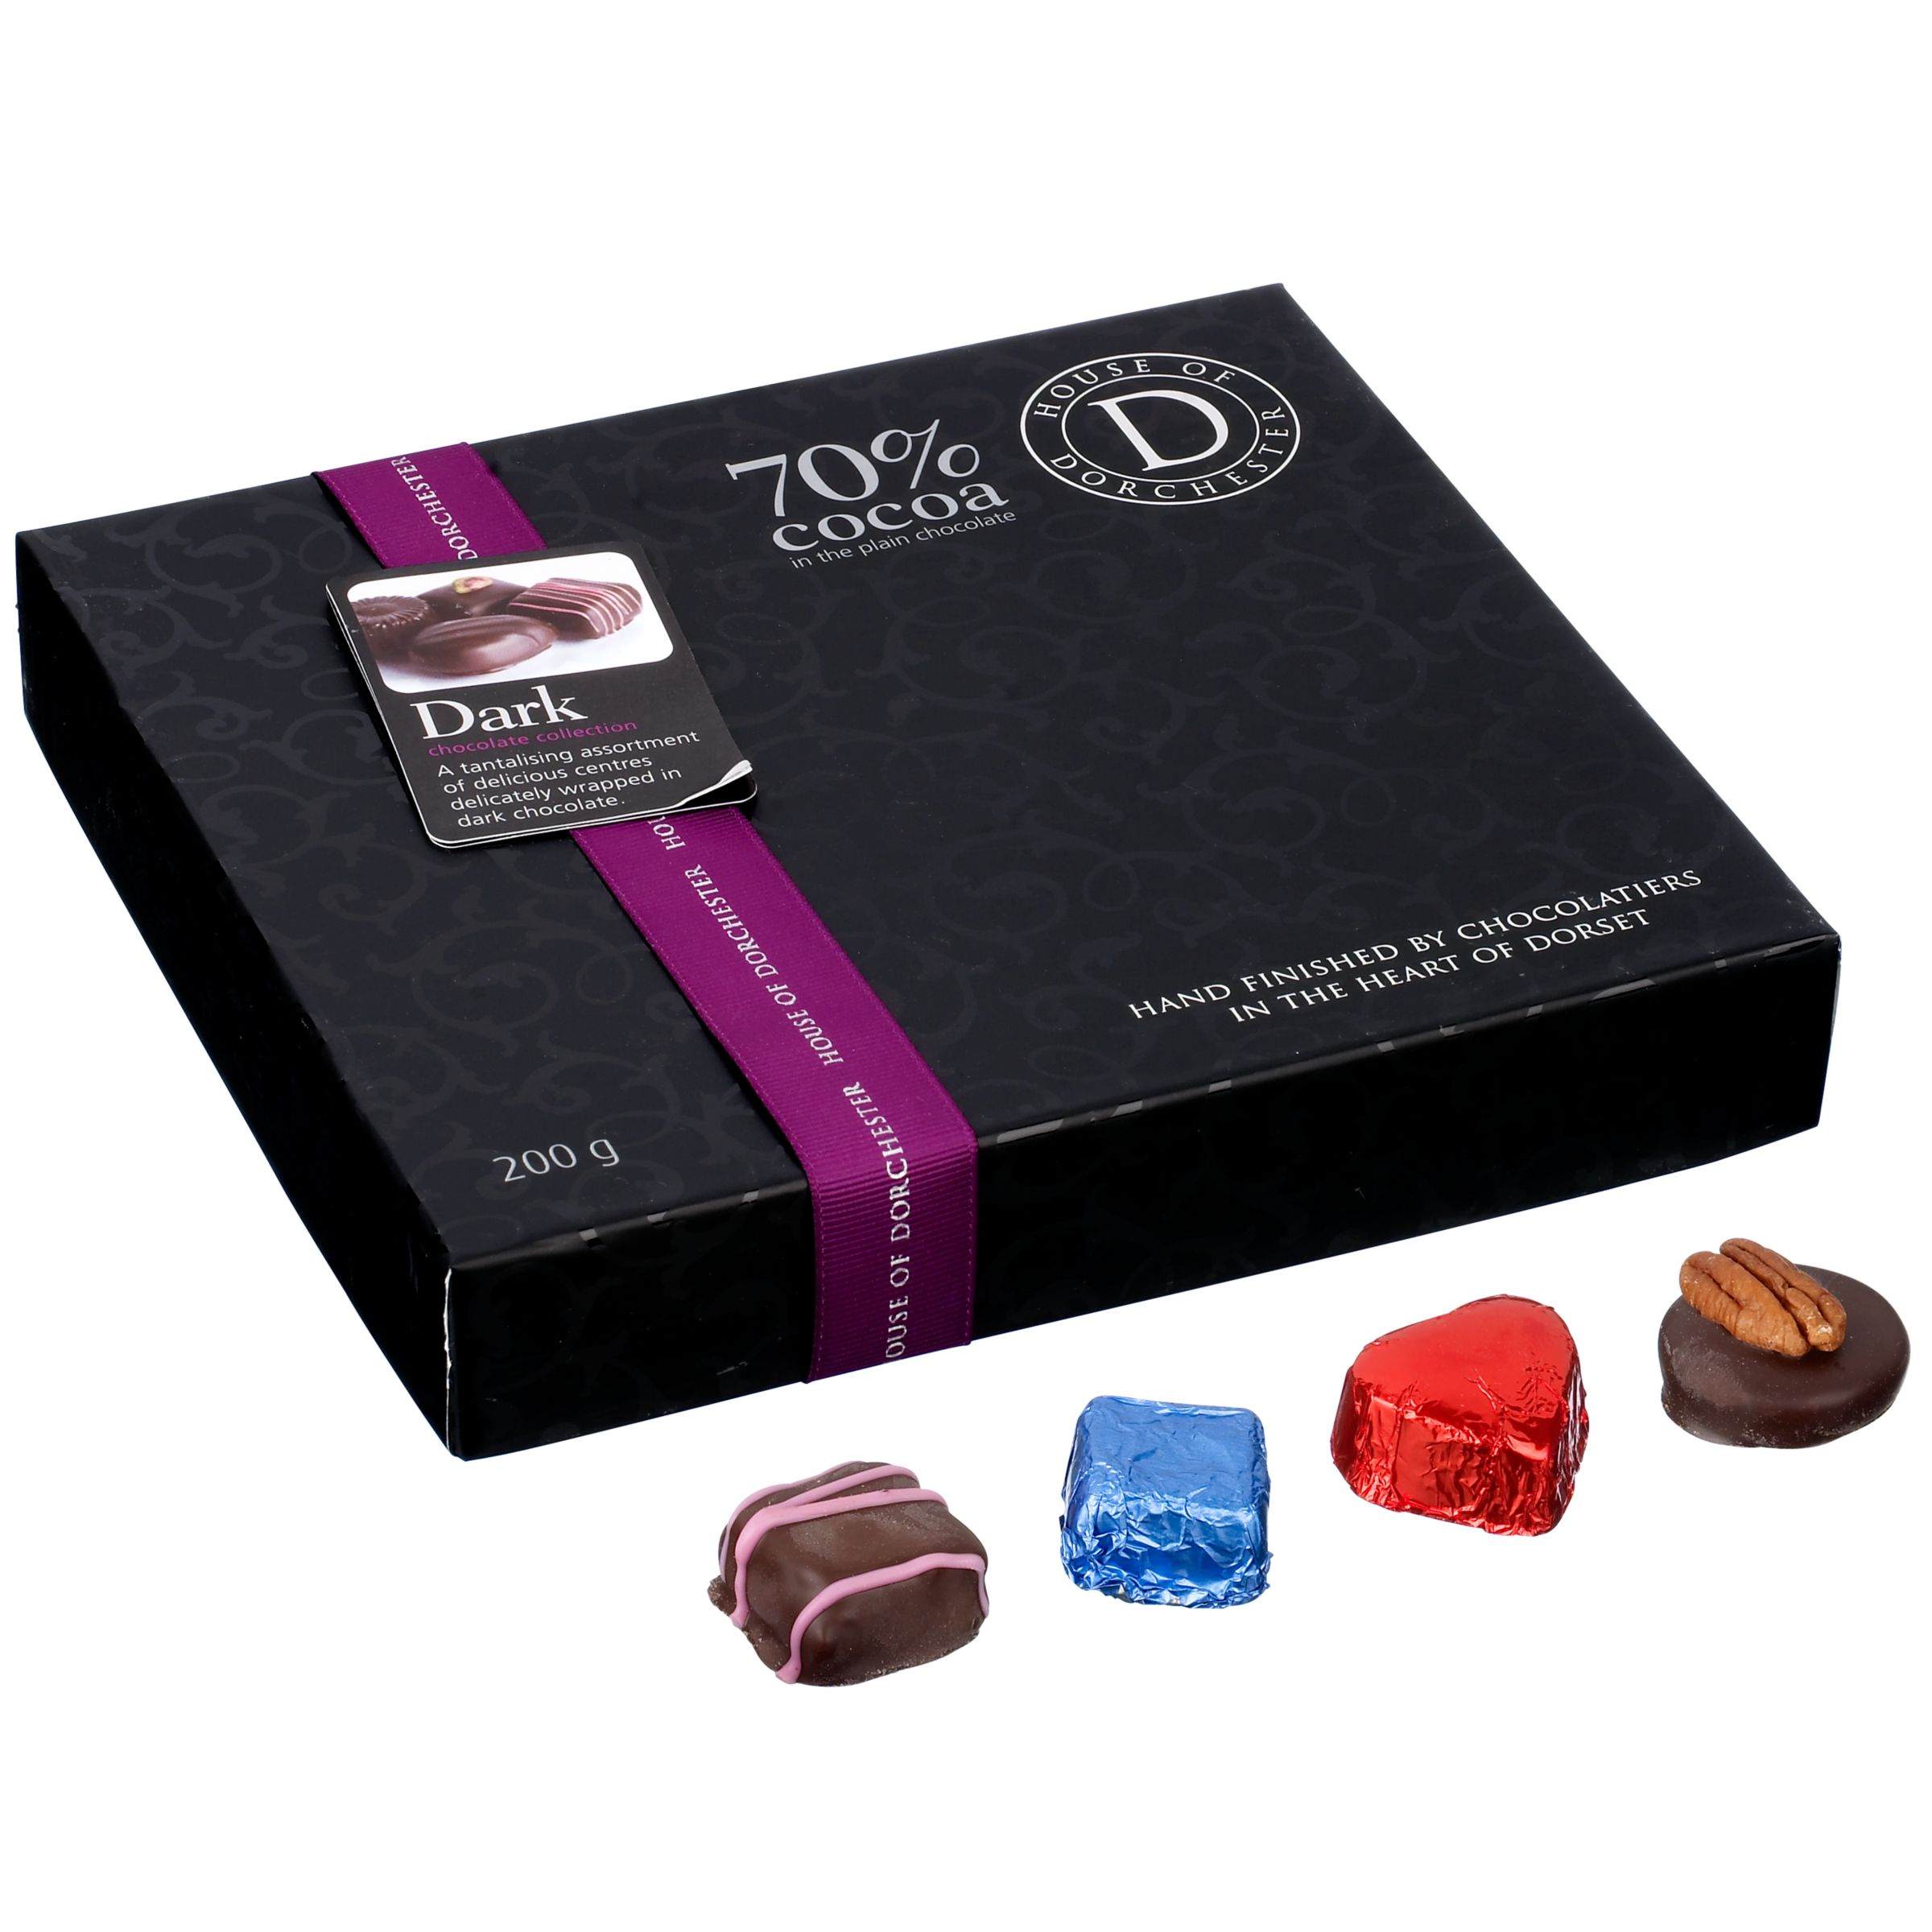 Luxury 70% Dark Chocolate